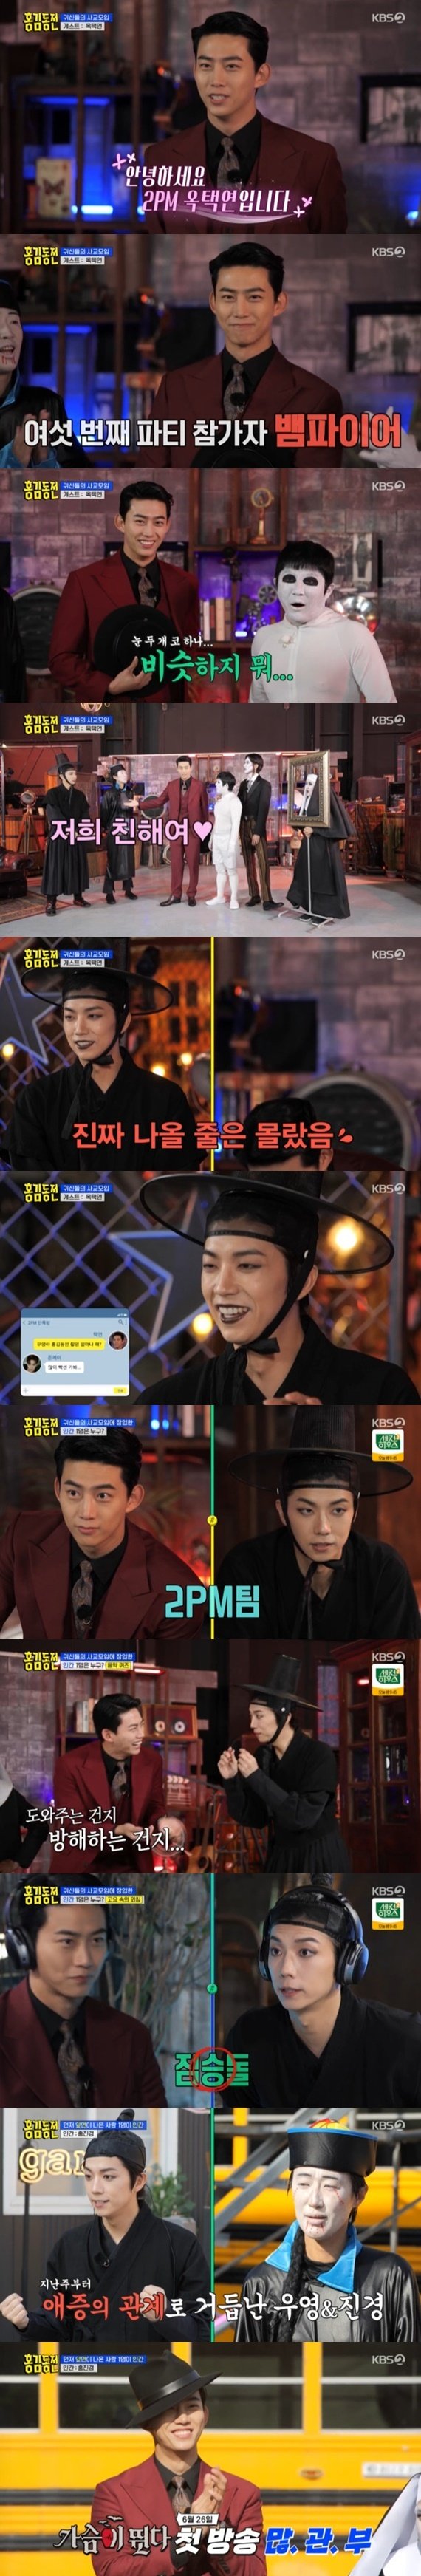 KBS 2TV '홍김동전' 캡처